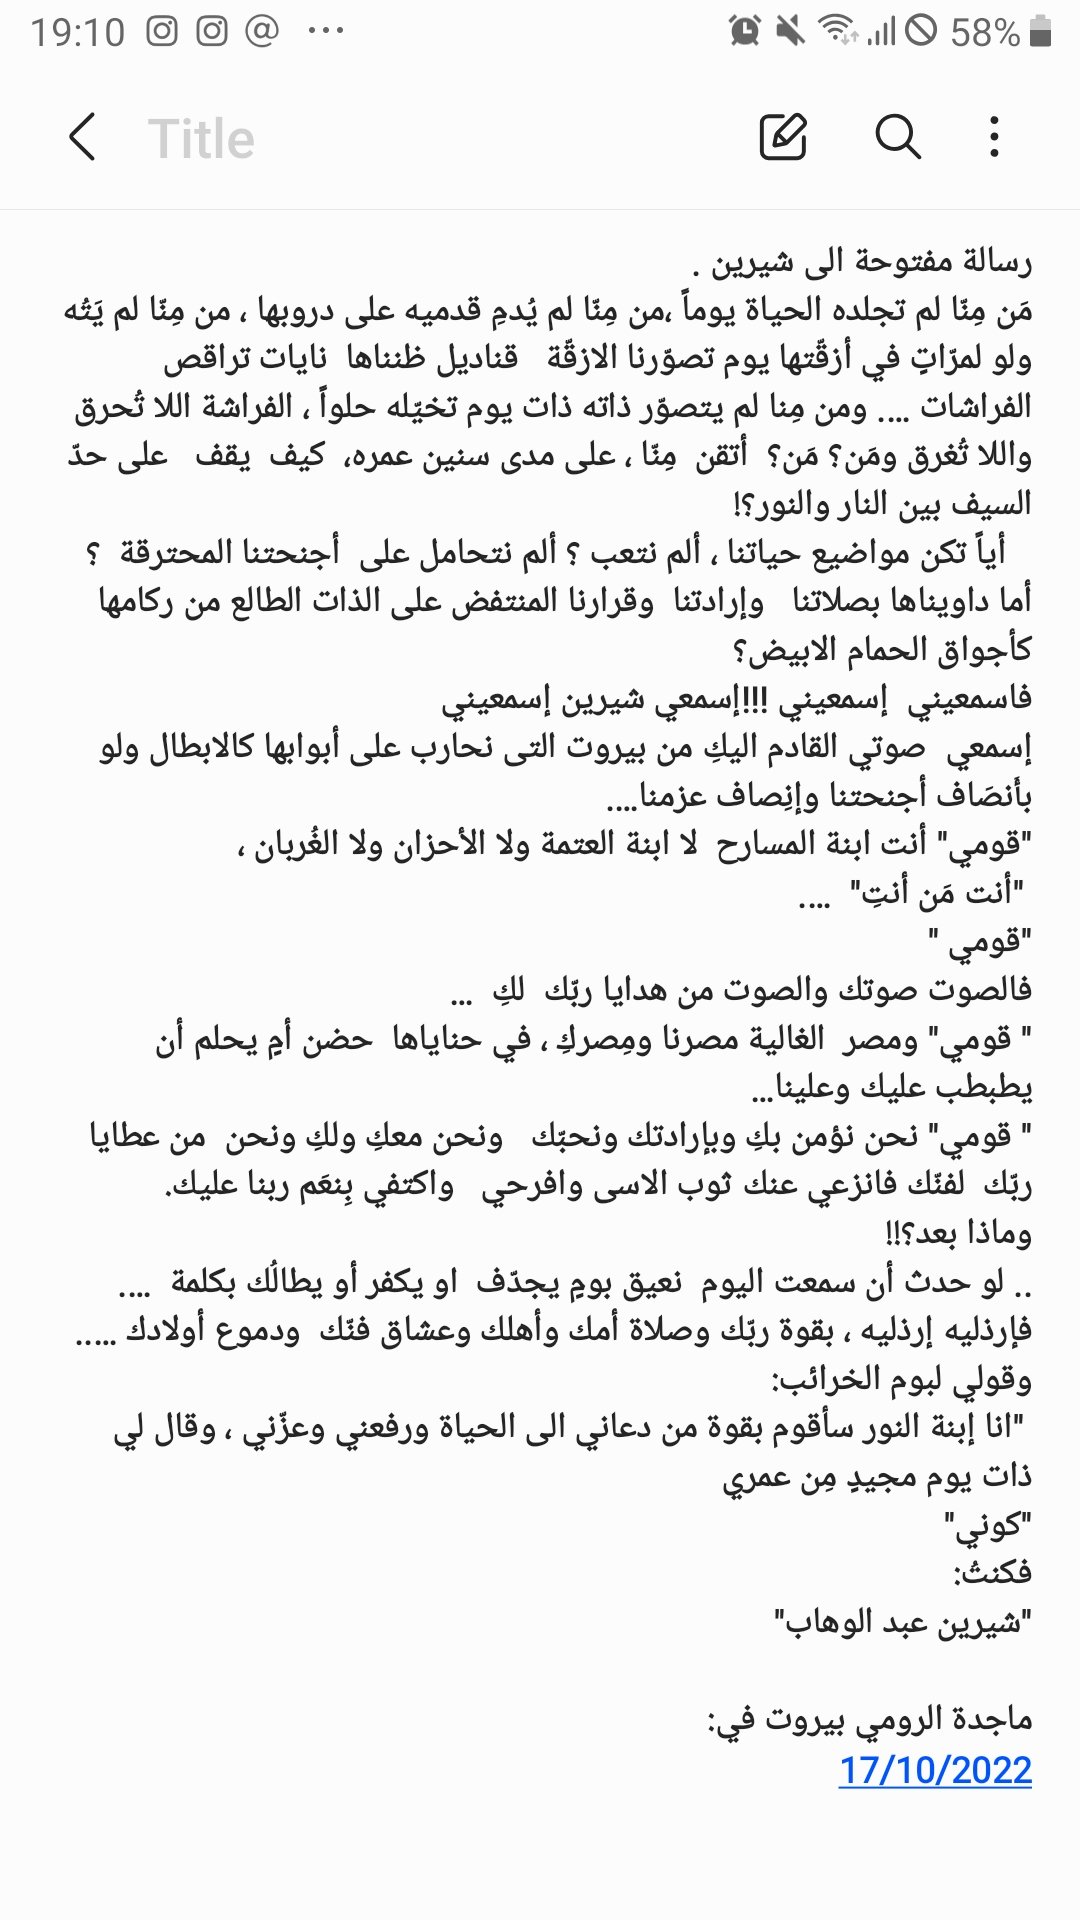 رسالة السيدة الراقية  الفنانة ماجدة الرومي للفنانة شرين عبد الوهاب في ازمتها   رسالة يحتاجها  كل مجروح مكسور